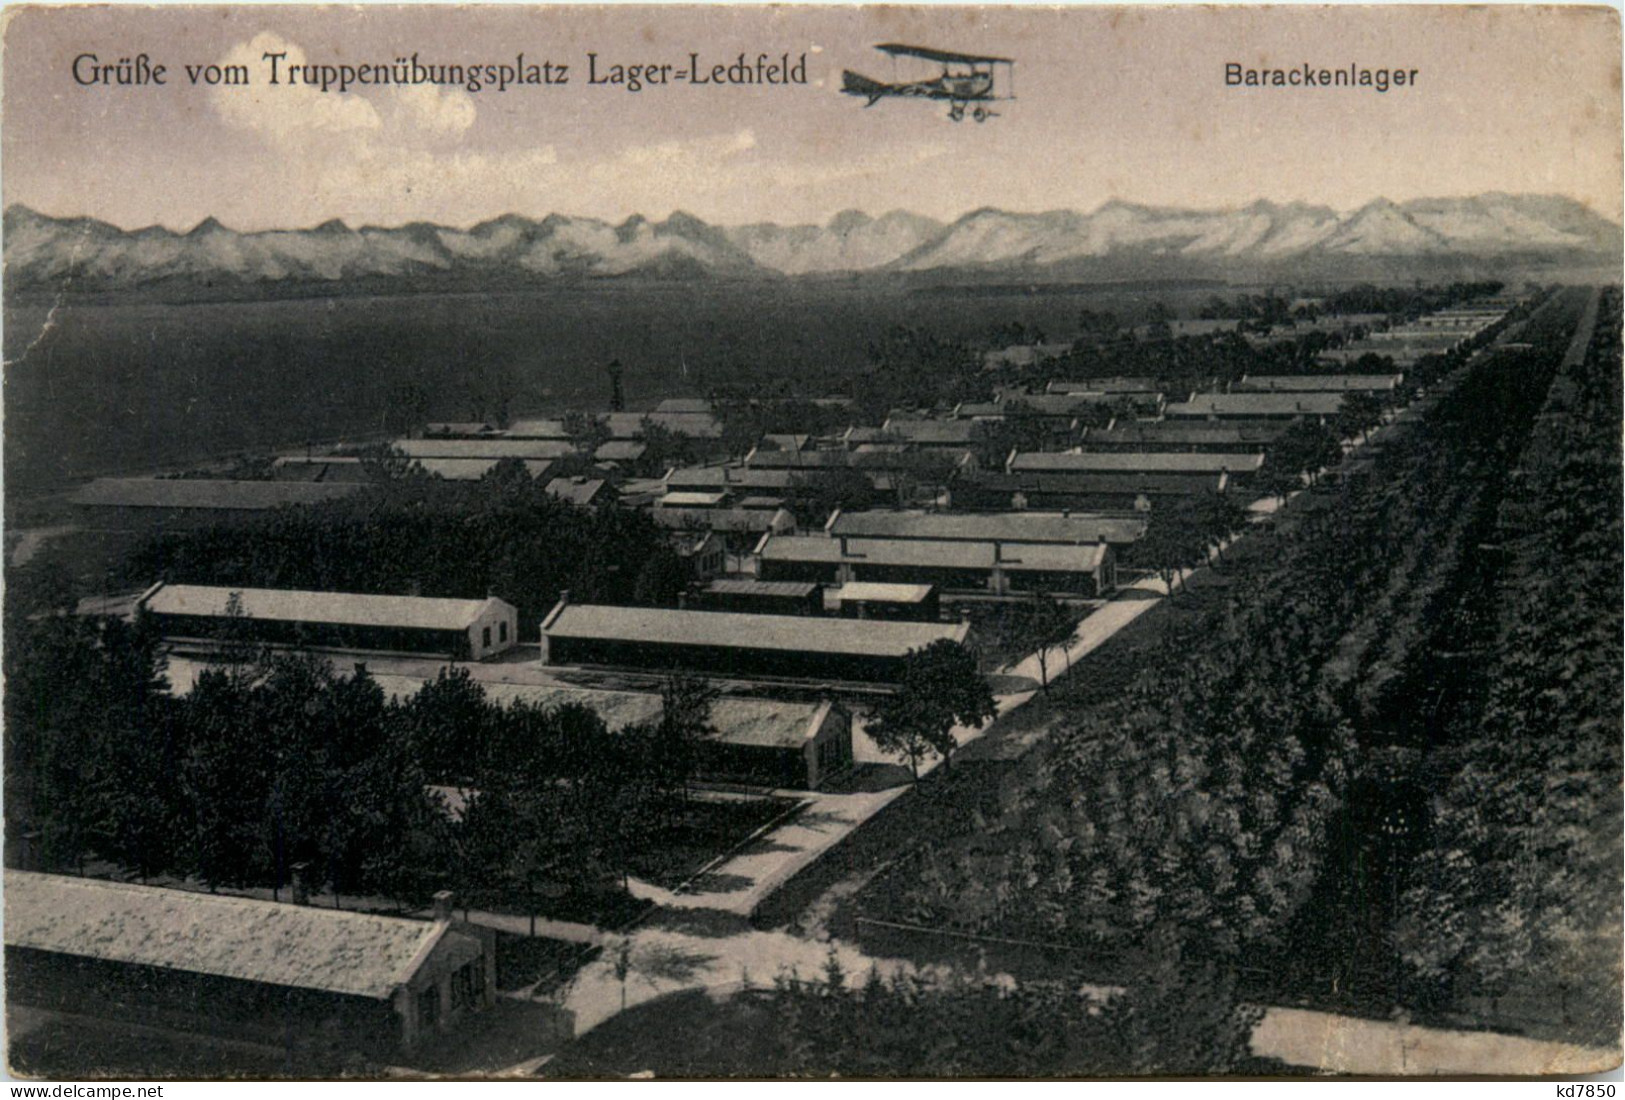 Lager-Lechfeld, Grüsse, Truppenübungsplatz - Augsburg